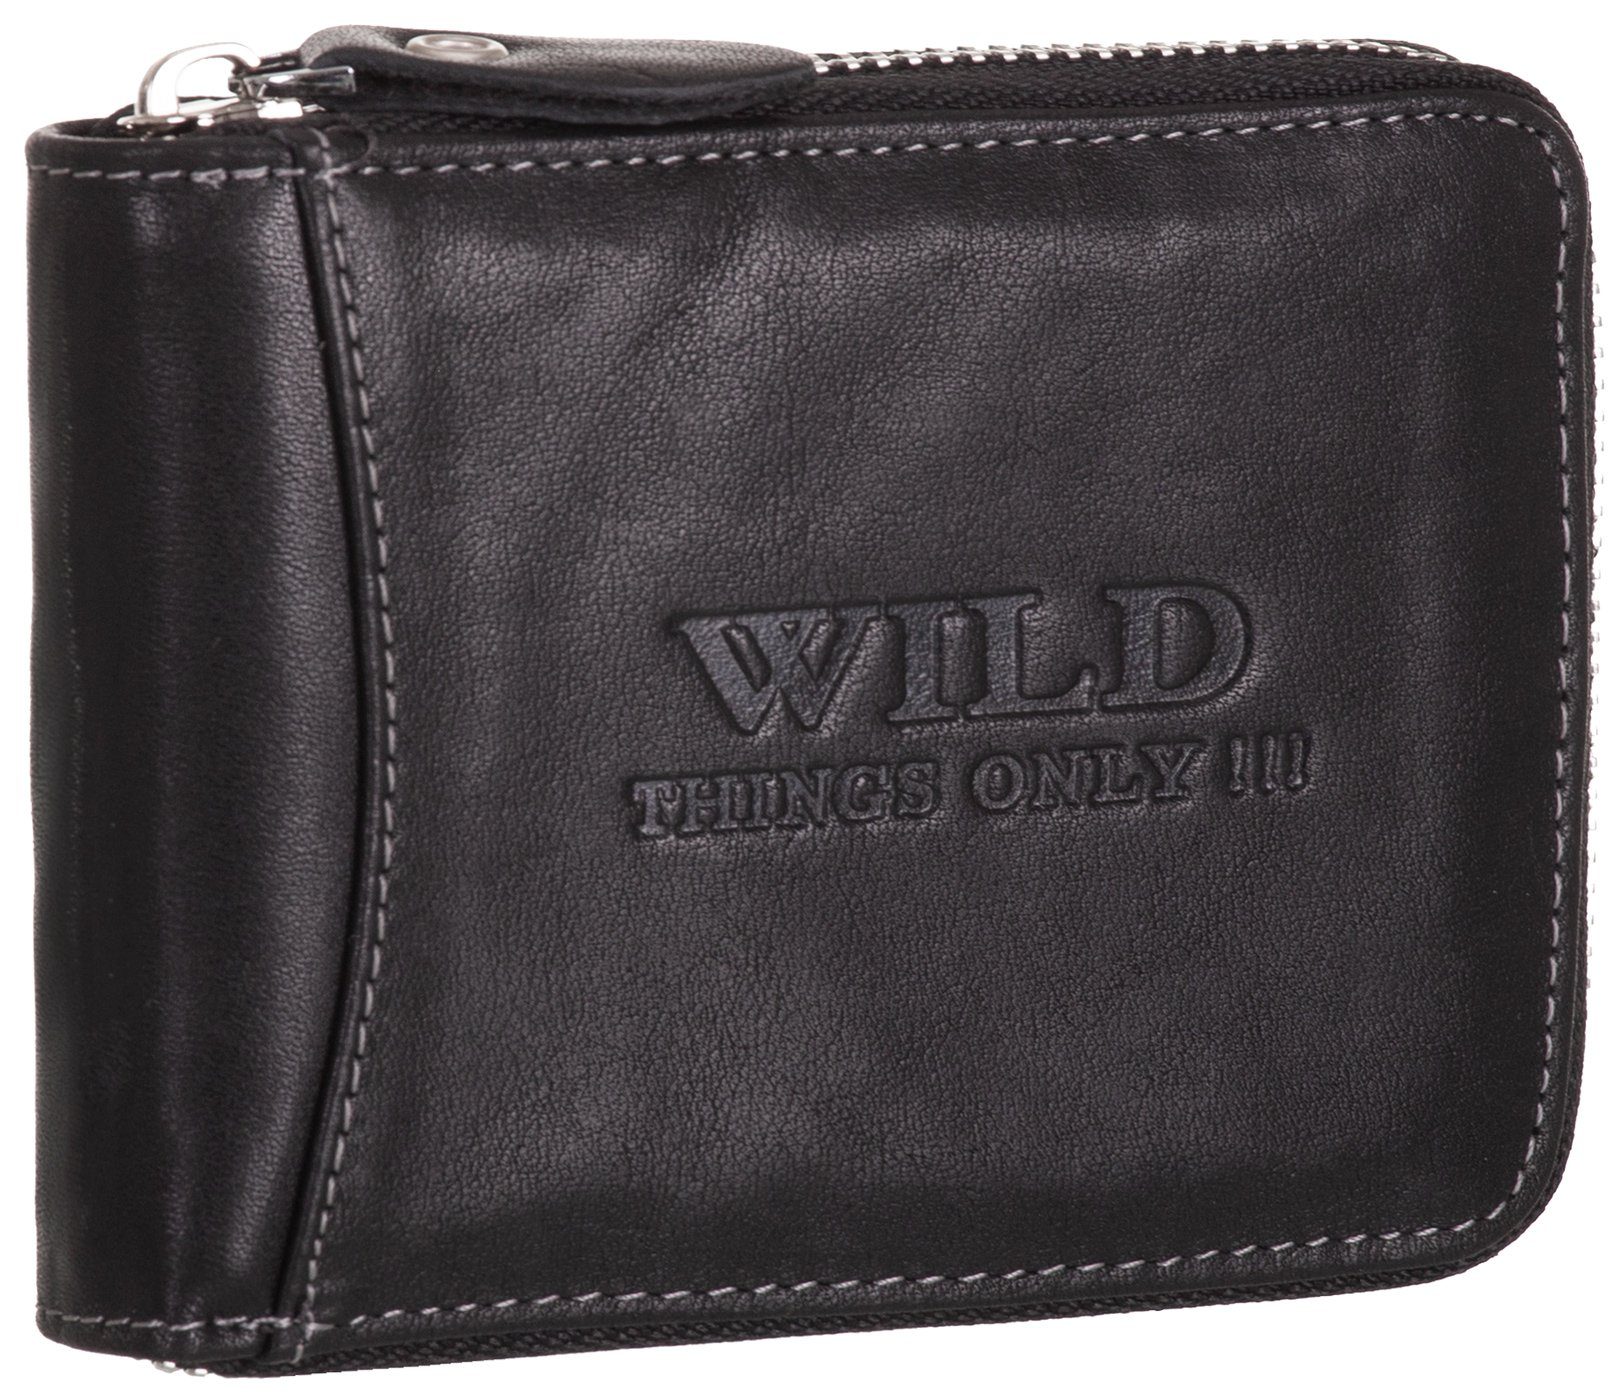 BAG STREET Geldbörse, Geldbörse Echt Leder RFID-Schutz mit Reißverschluss Portemonnaie Geldbeutel schwarz | Geldbörsen